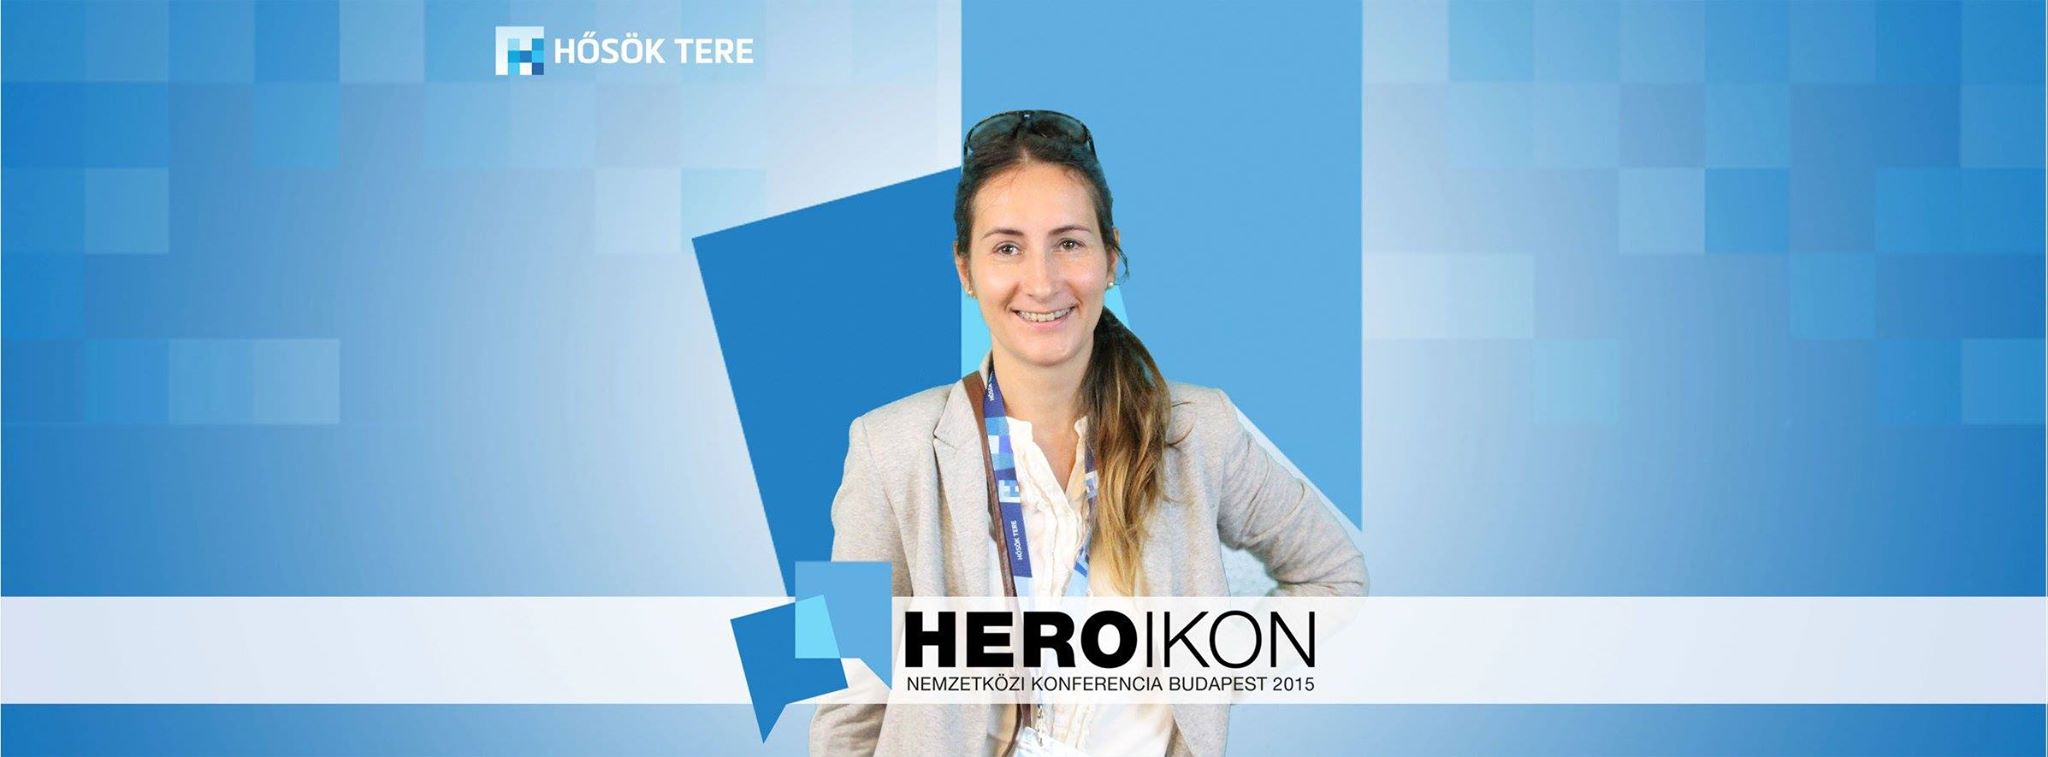 heroikon_konferencia.jpg